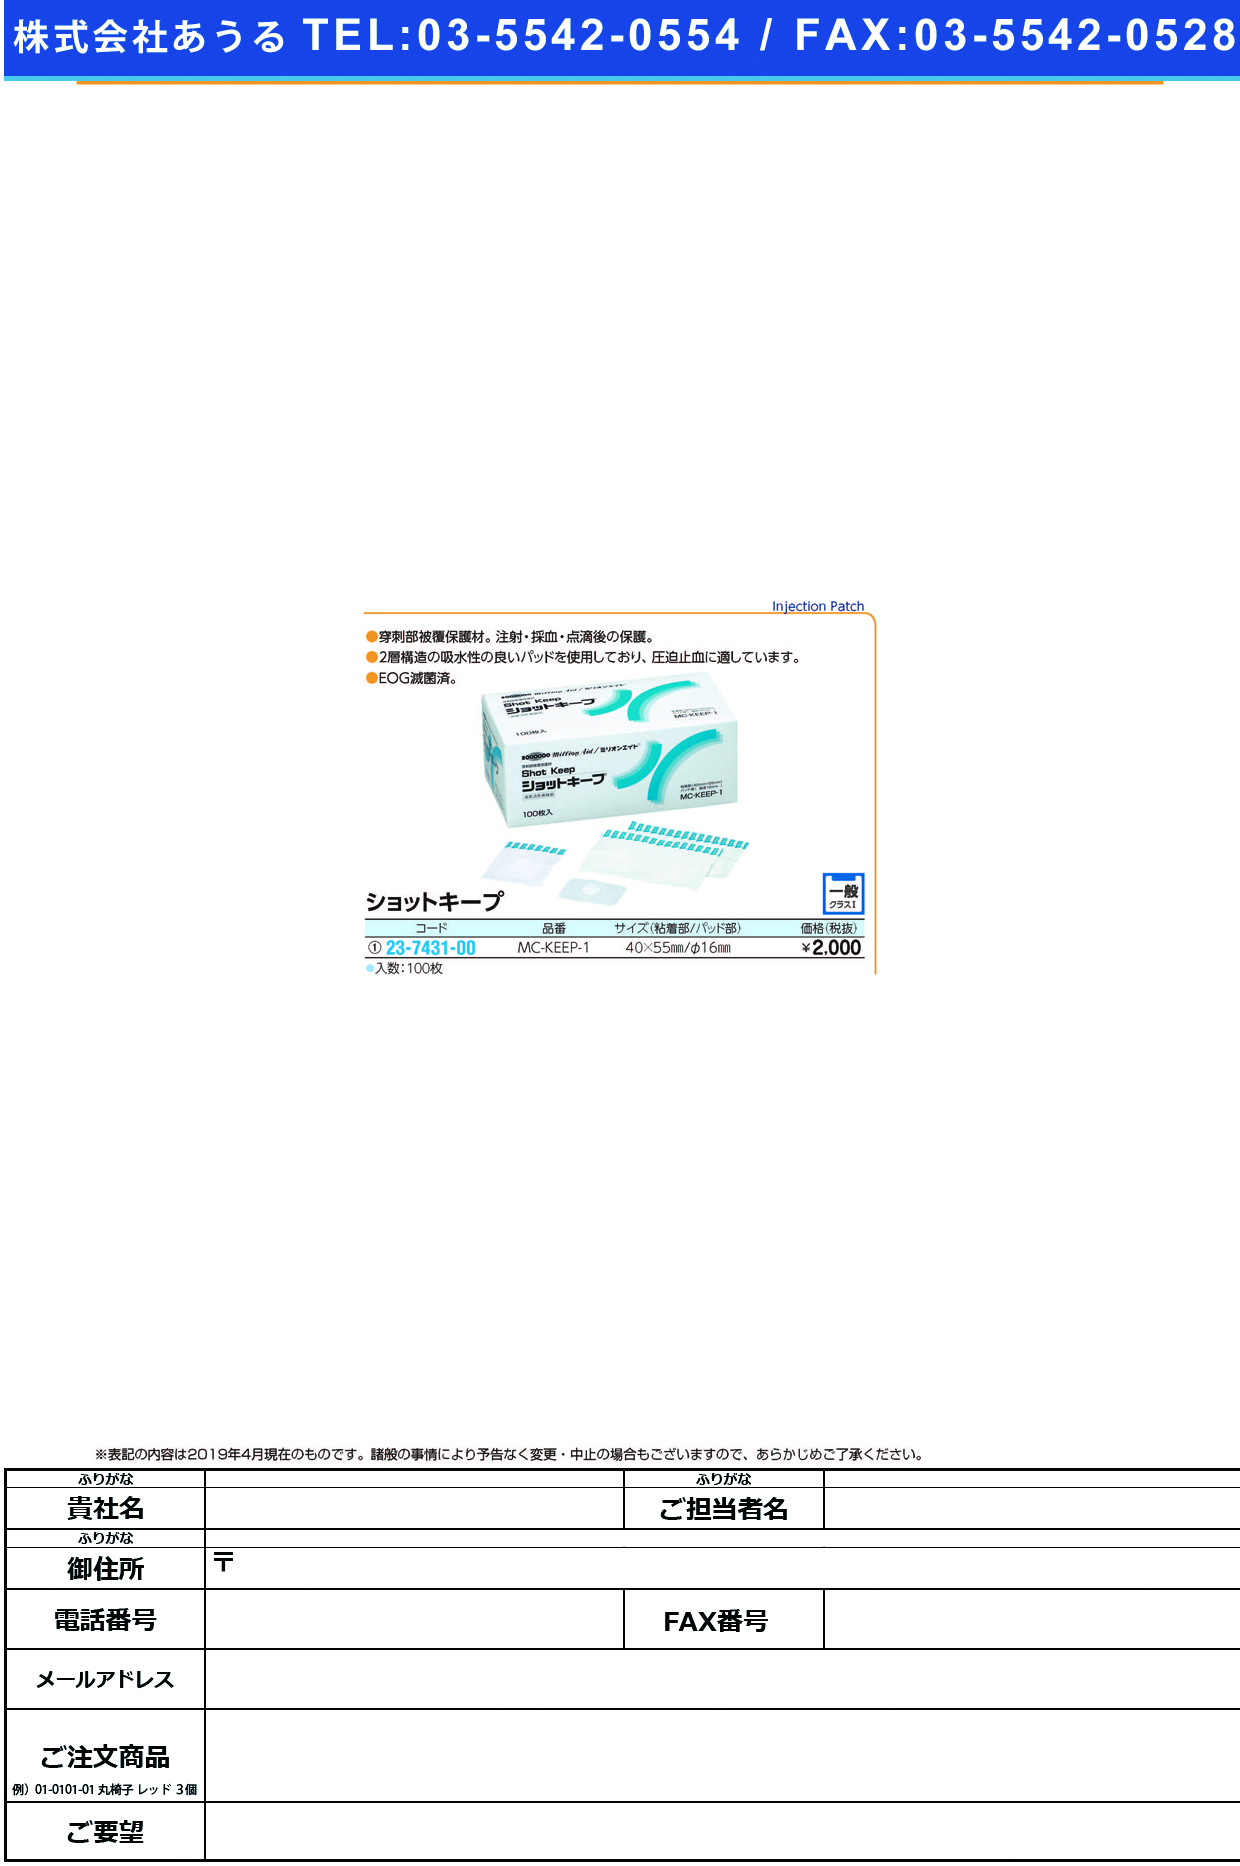 (23-7431-00)ミリオンエイドショットキープ 40X55MM(100ﾌｸﾛｲﾘ) ﾐﾘｵﾝｴｲﾄﾞｼｮｯﾄｷｰﾌﾟ(共和)【1箱単位】【2019年カタログ商品】